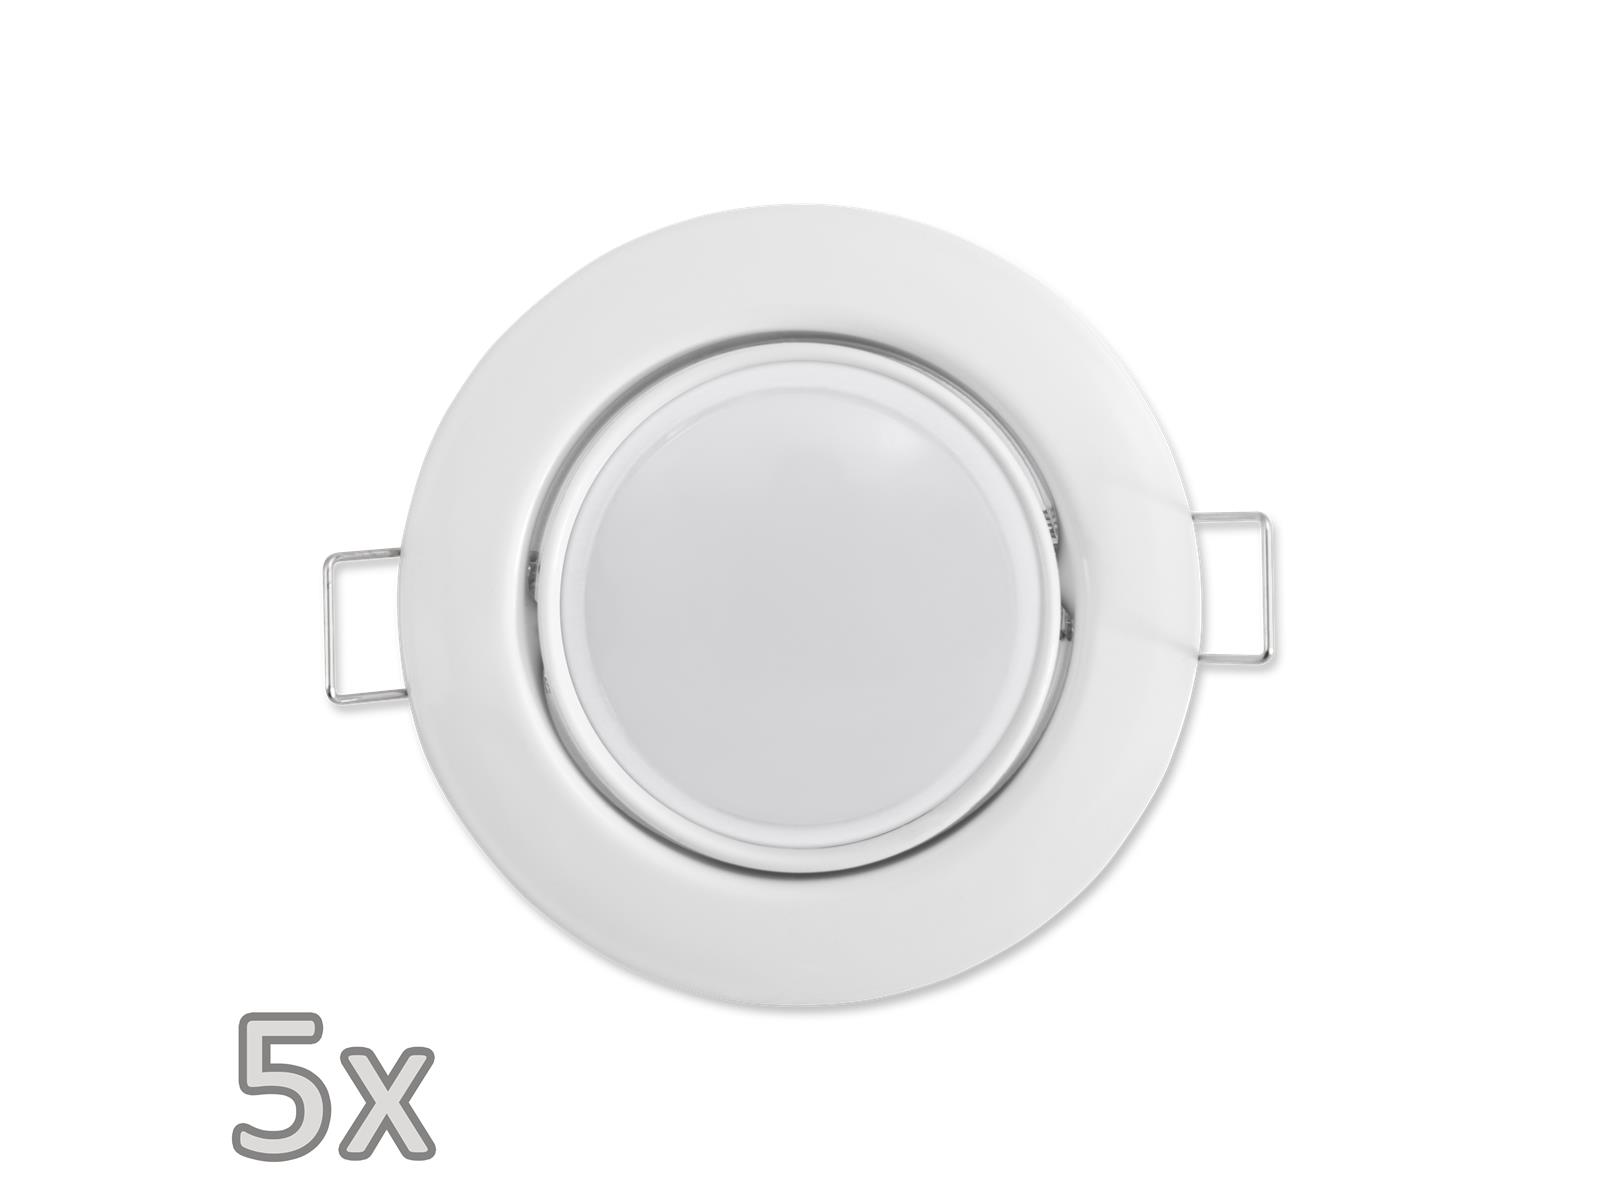 Einbauleuchten-Set McShine, 5xRahmen, 5xLED-Modul, 3W, 265lm, 230V, weiß